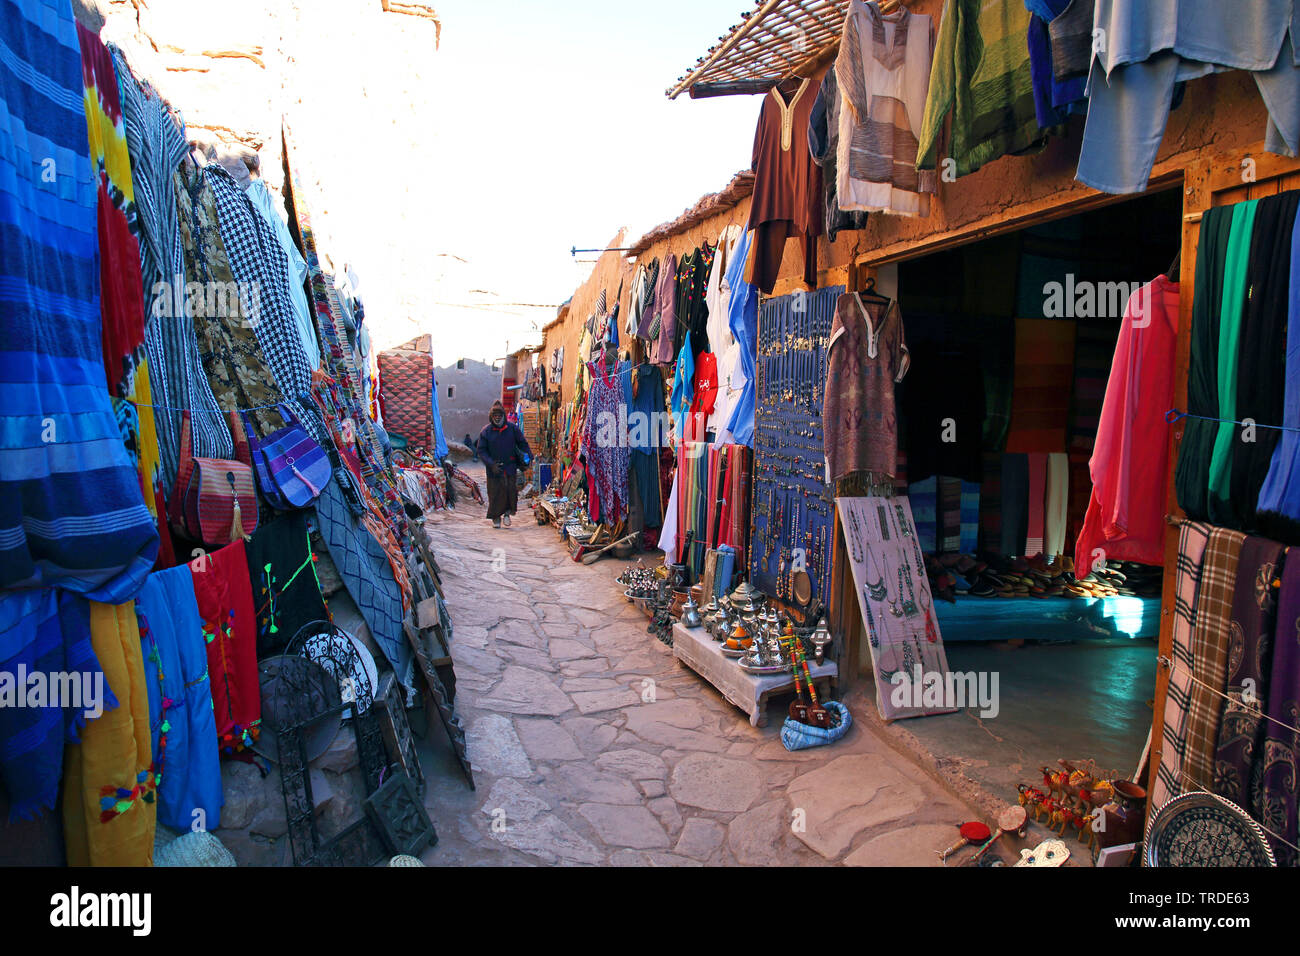 Des magasins de souvenirs dans la Casbah Ait Benhaddou, Maroc Banque D'Images